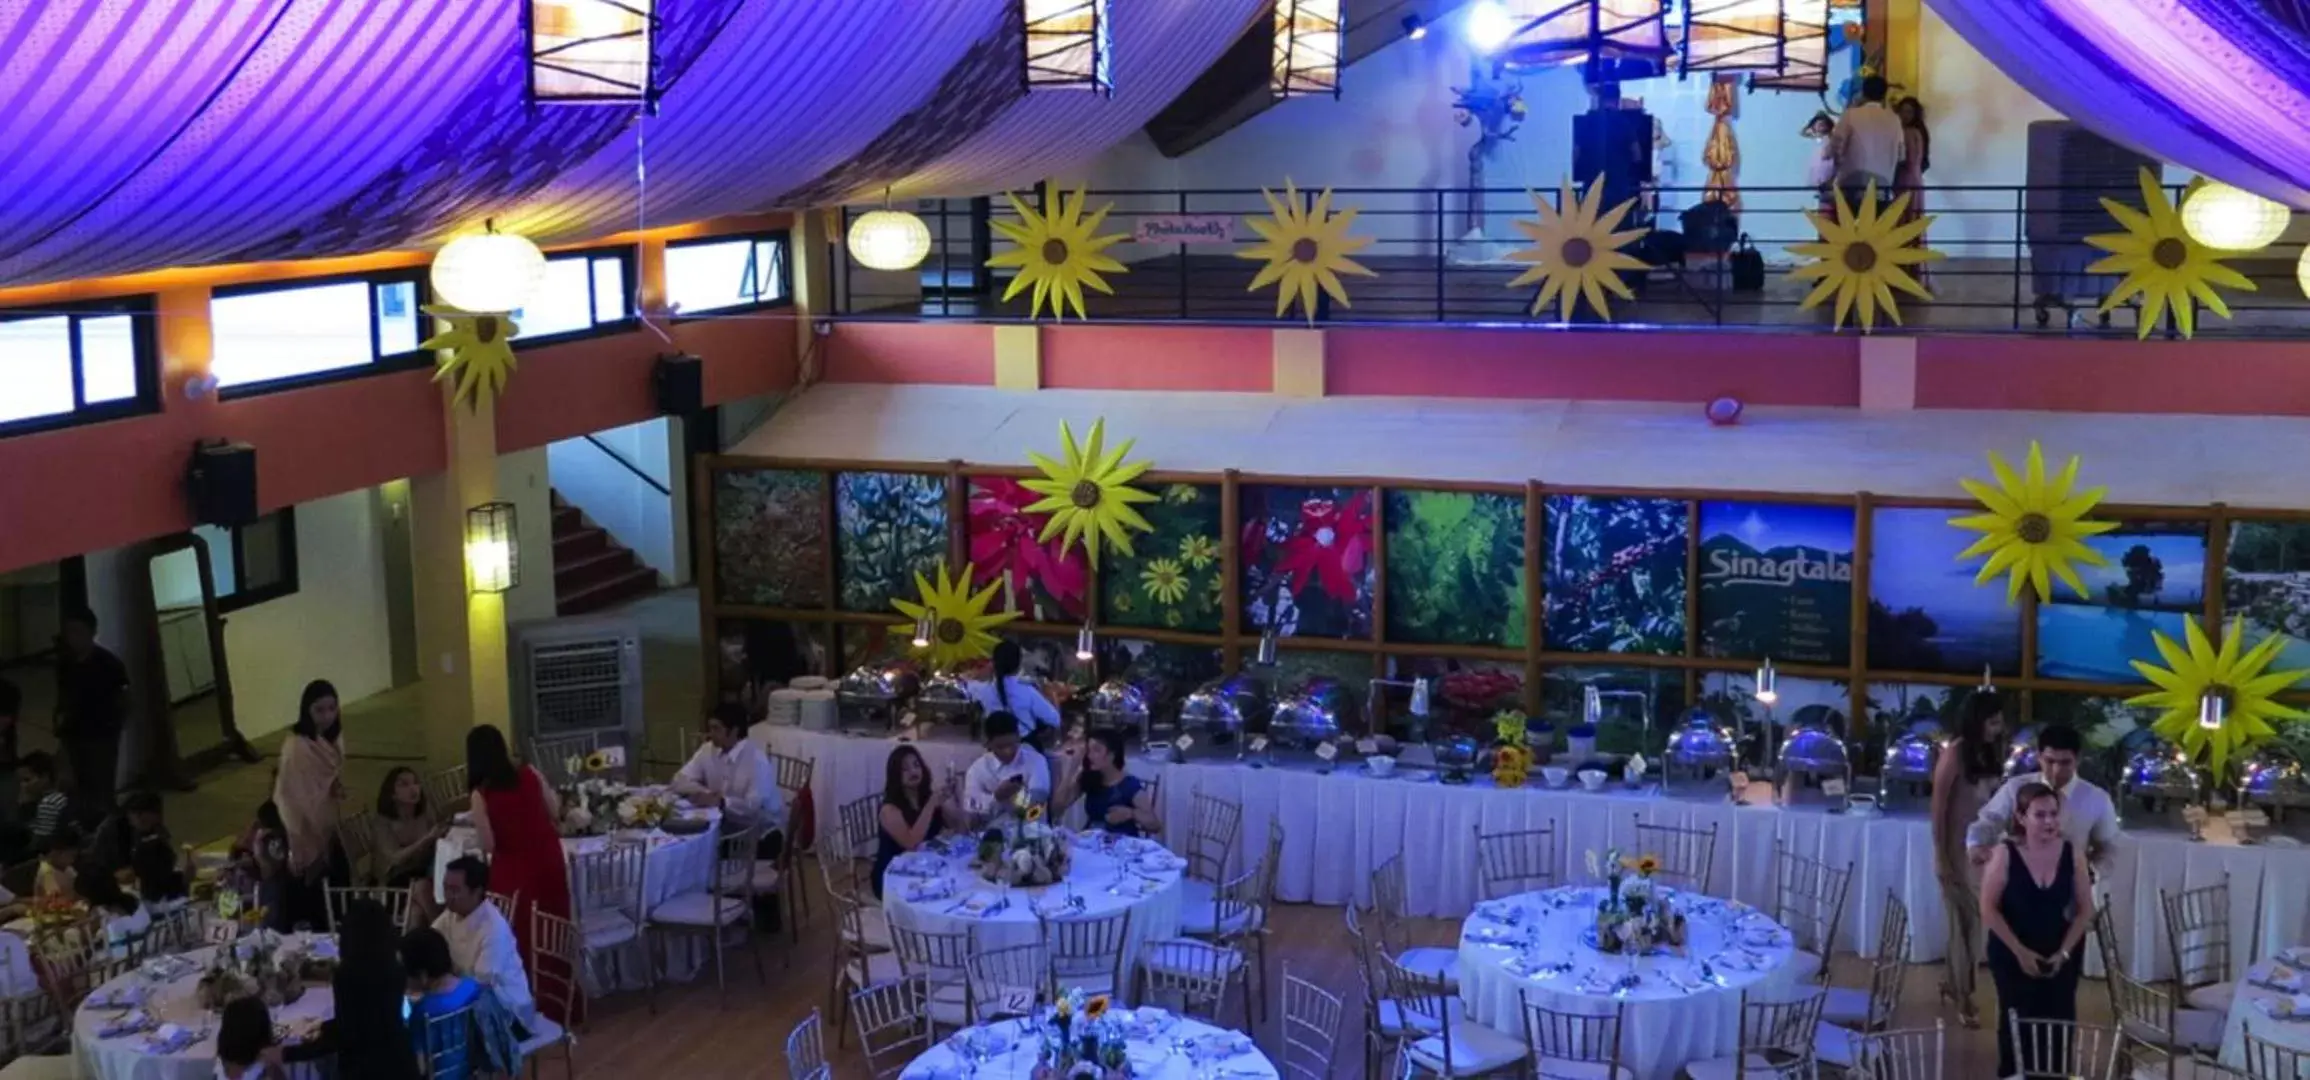 Banquet/Function facilities, Banquet Facilities in The Duyan House at Sinagtala Resort